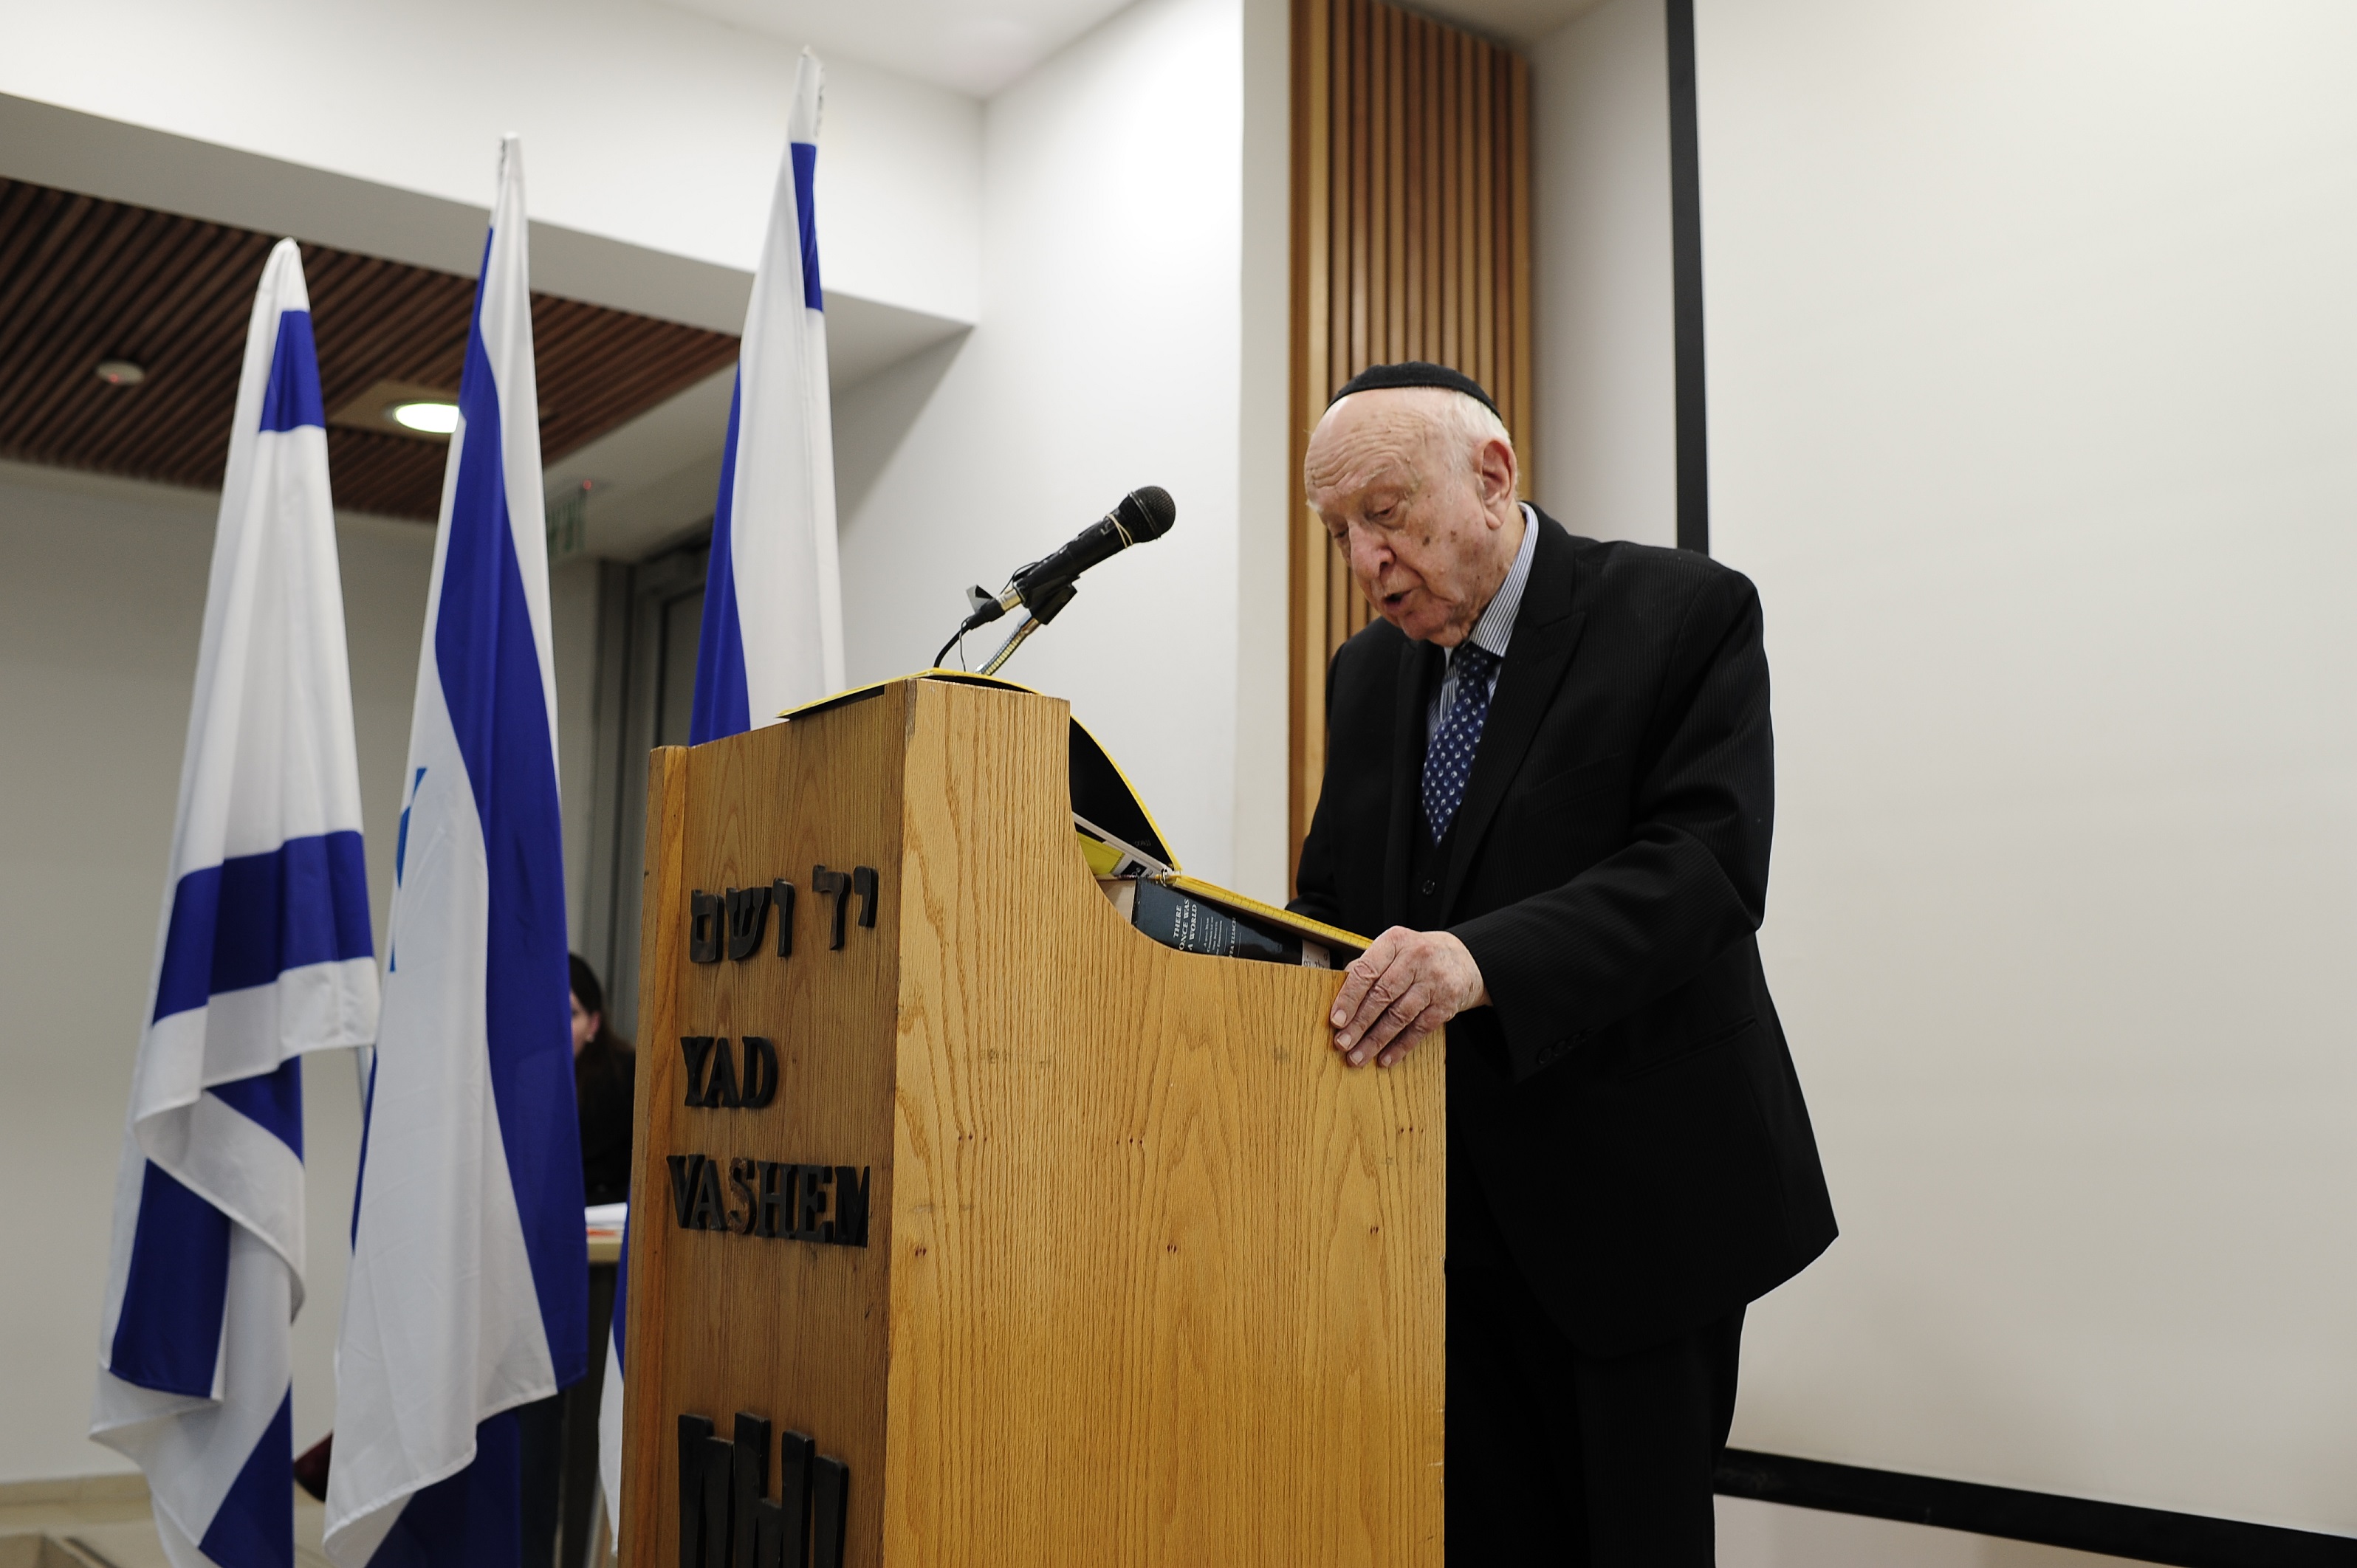 Rabbi Dr. David Eliach, Prof. Eliach's widower, recalled the inspiring legacy of his late wife, Prof. Yaffa Eliach.